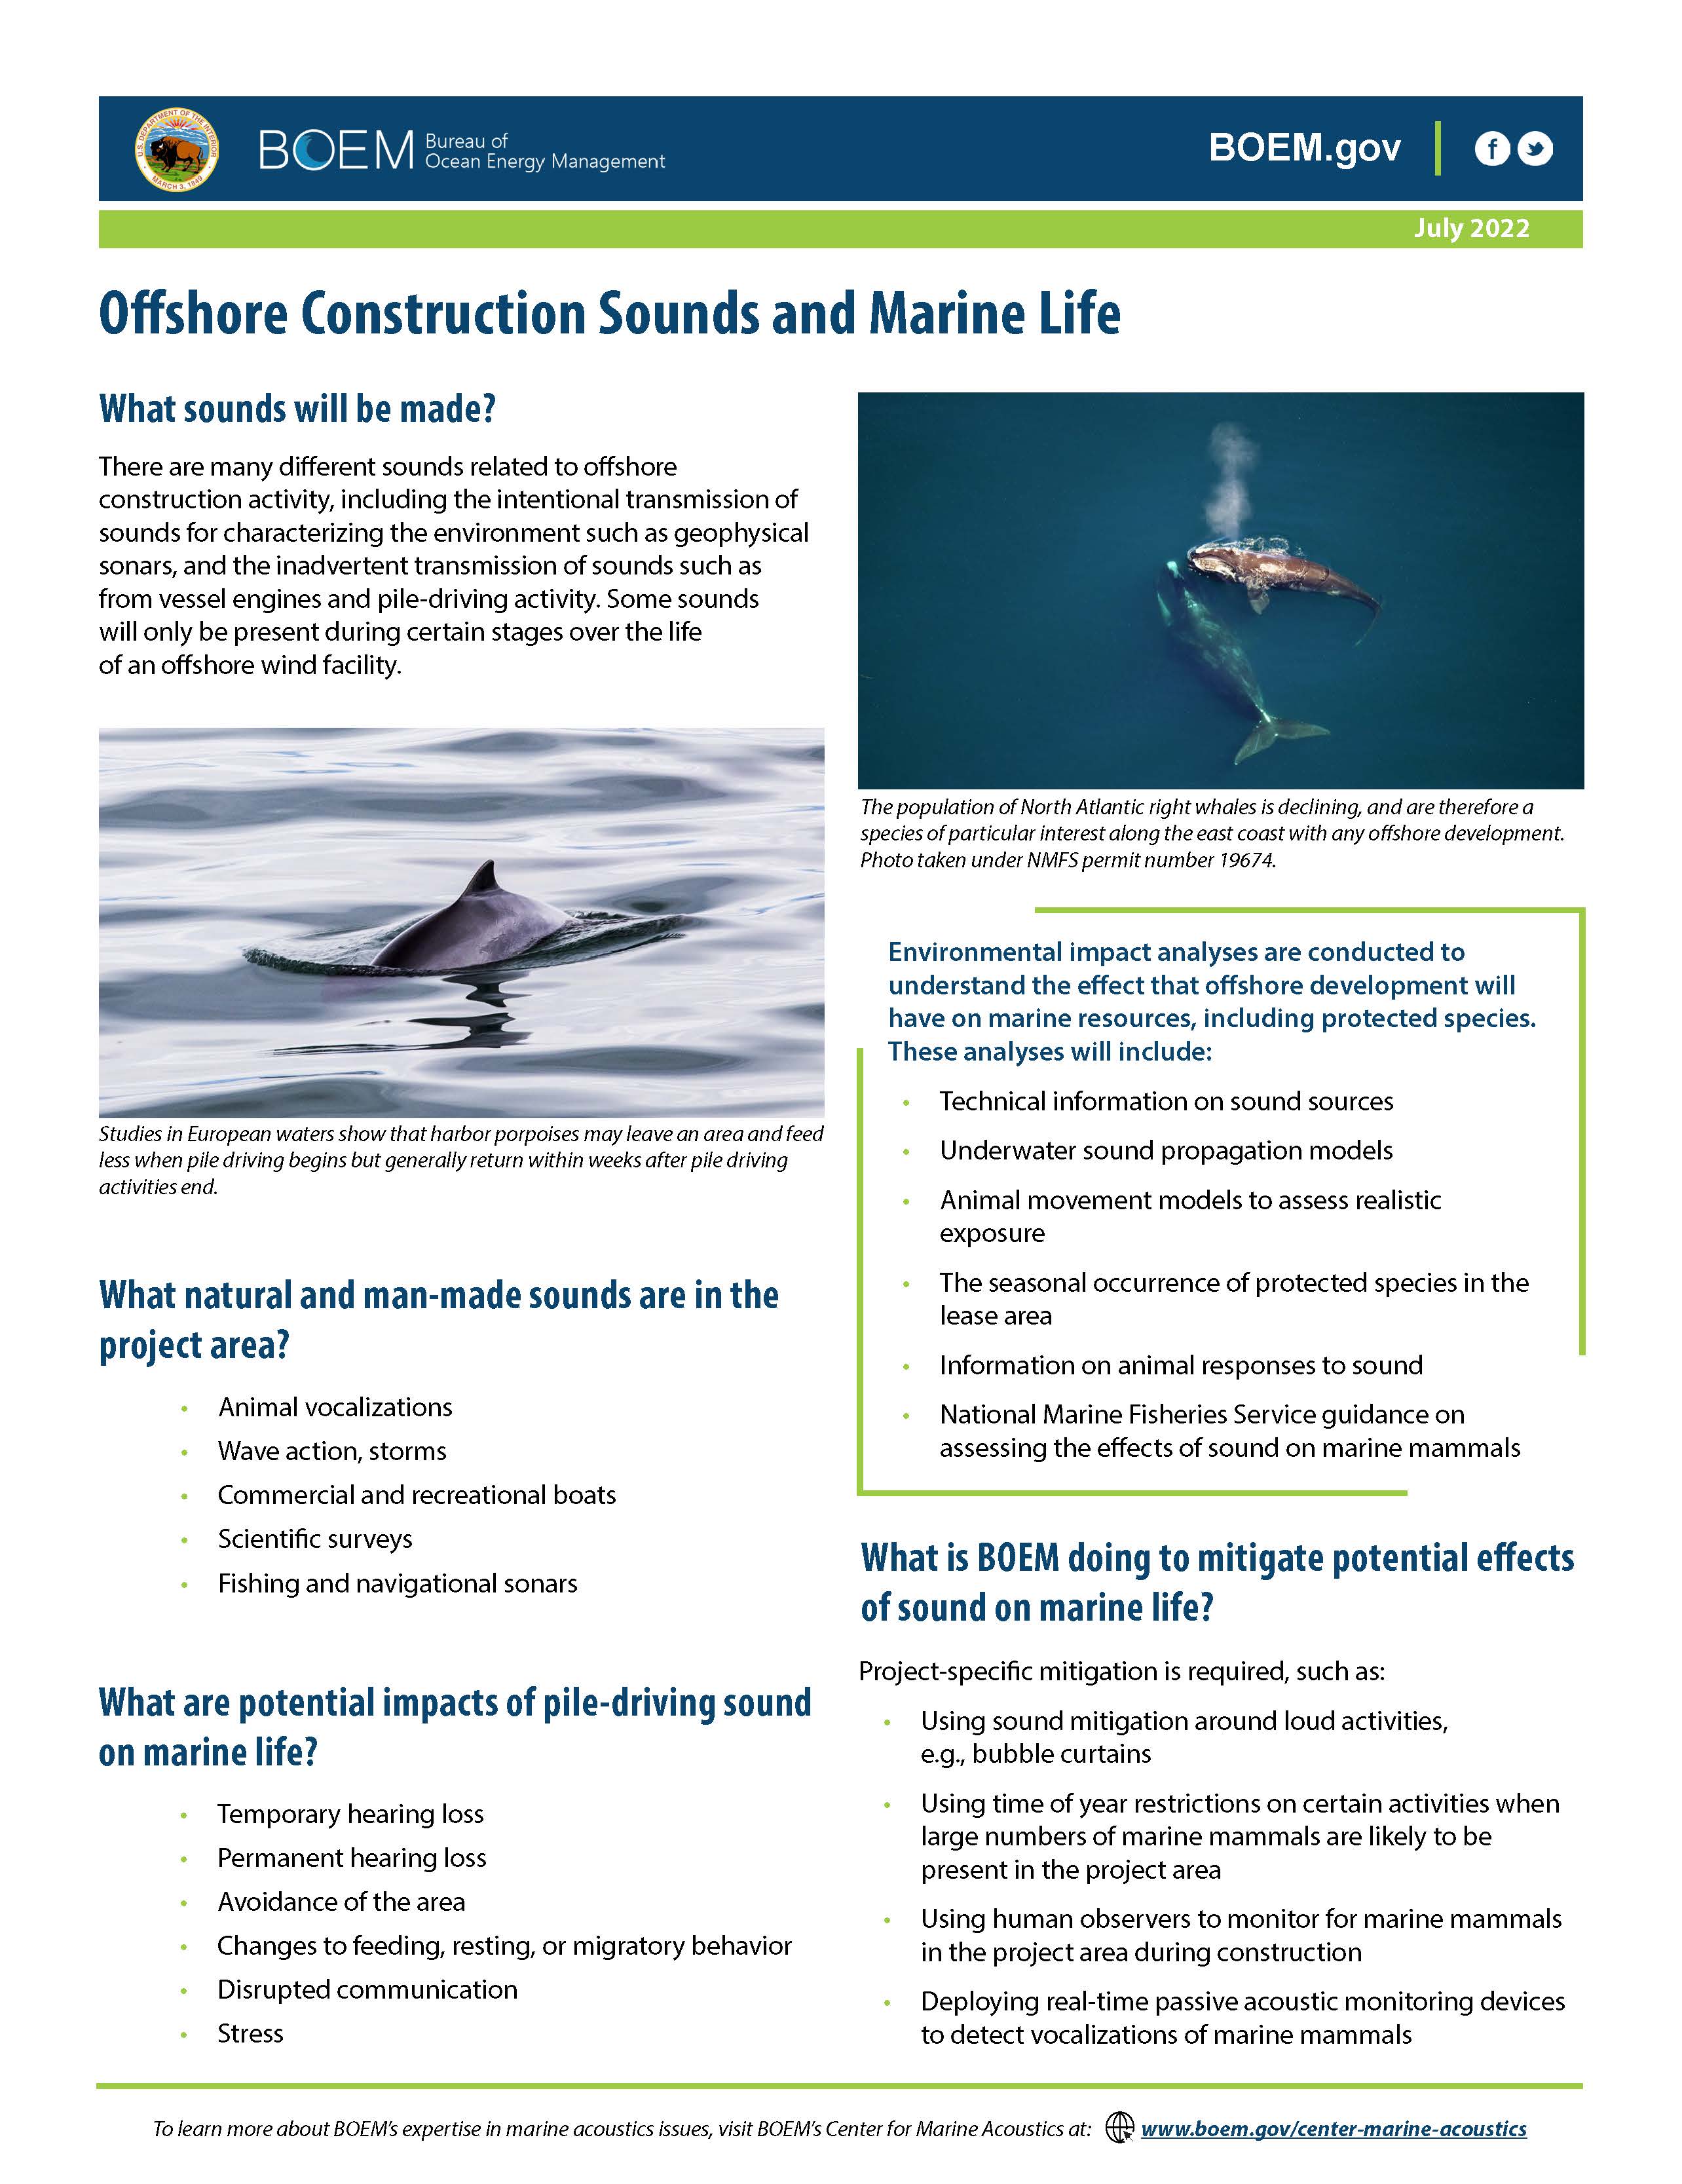 Underwater Sound on Marine Life Factsheet